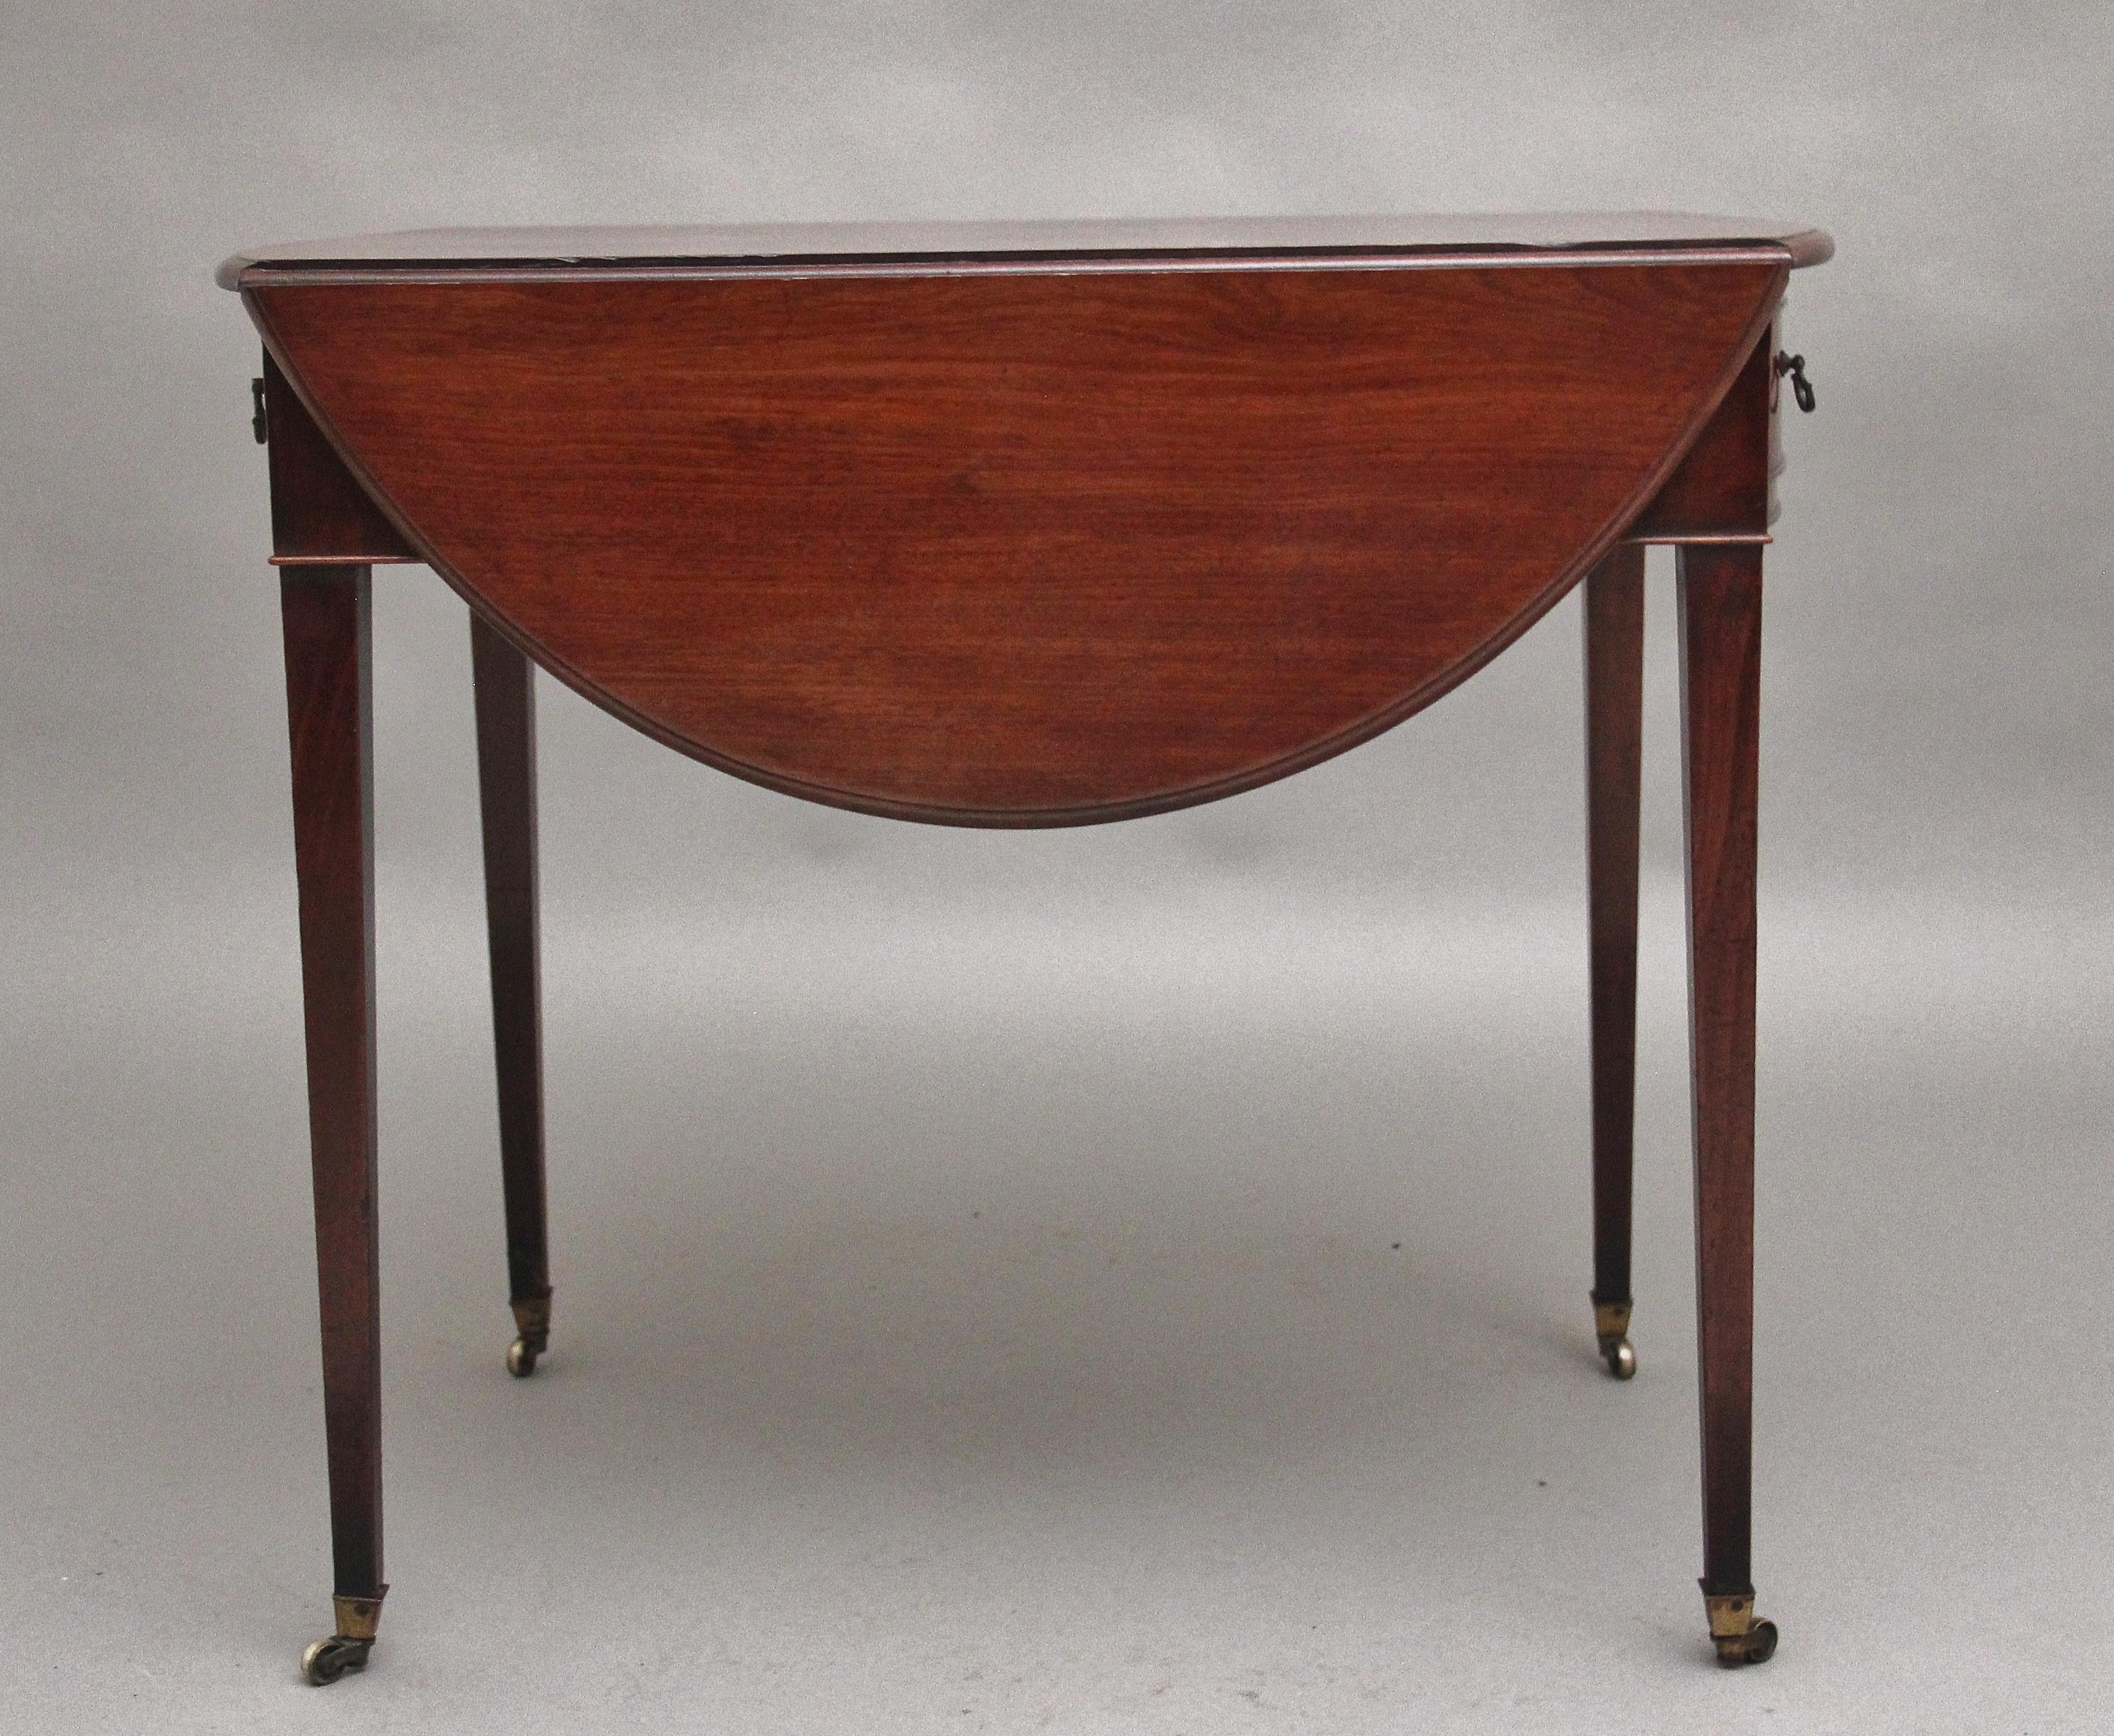 Mahagoni-Pembroke-Tisch aus dem 18. Jahrhundert (Spätes 18. Jahrhundert)